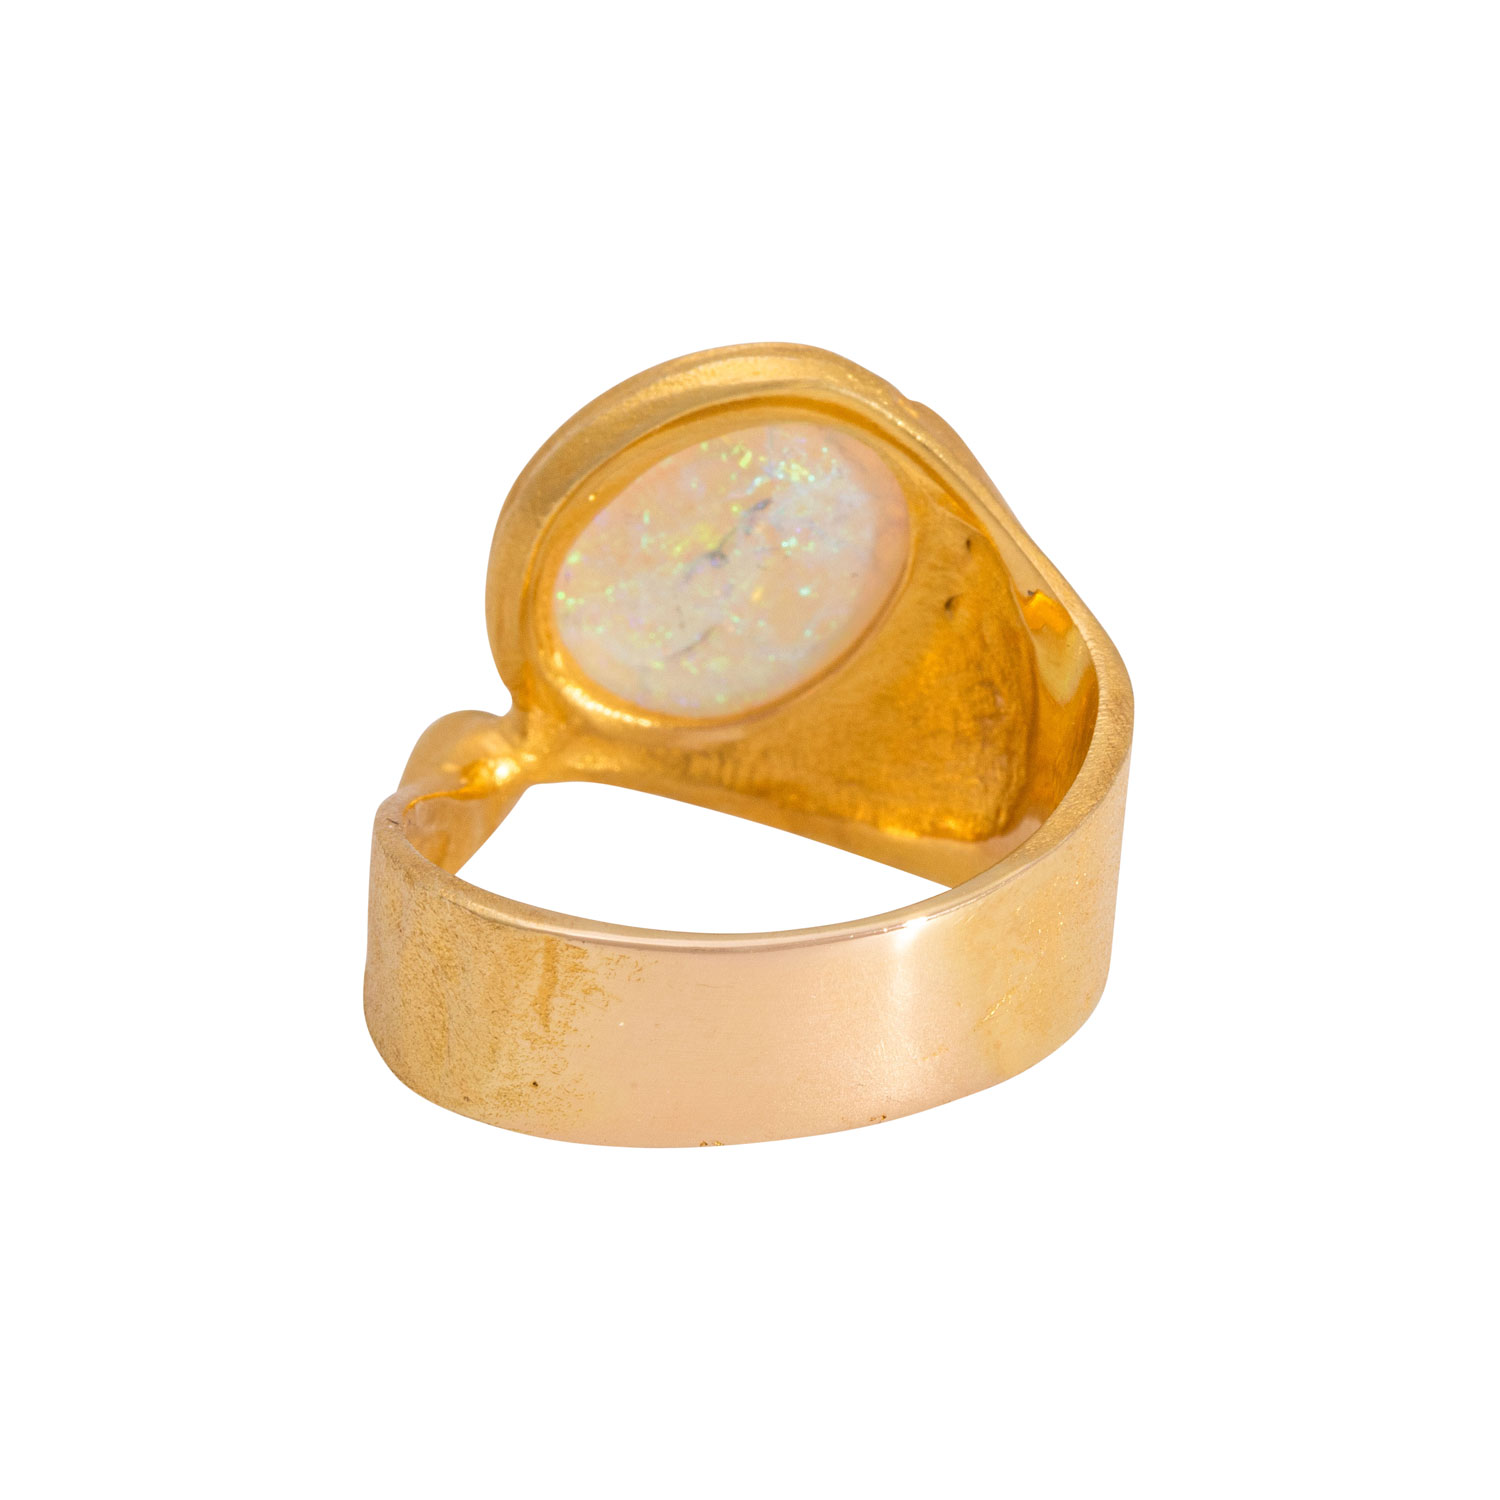 Ring mit Crystalopal und Brillant ca. 0,06 ct (punziert), - Image 3 of 4